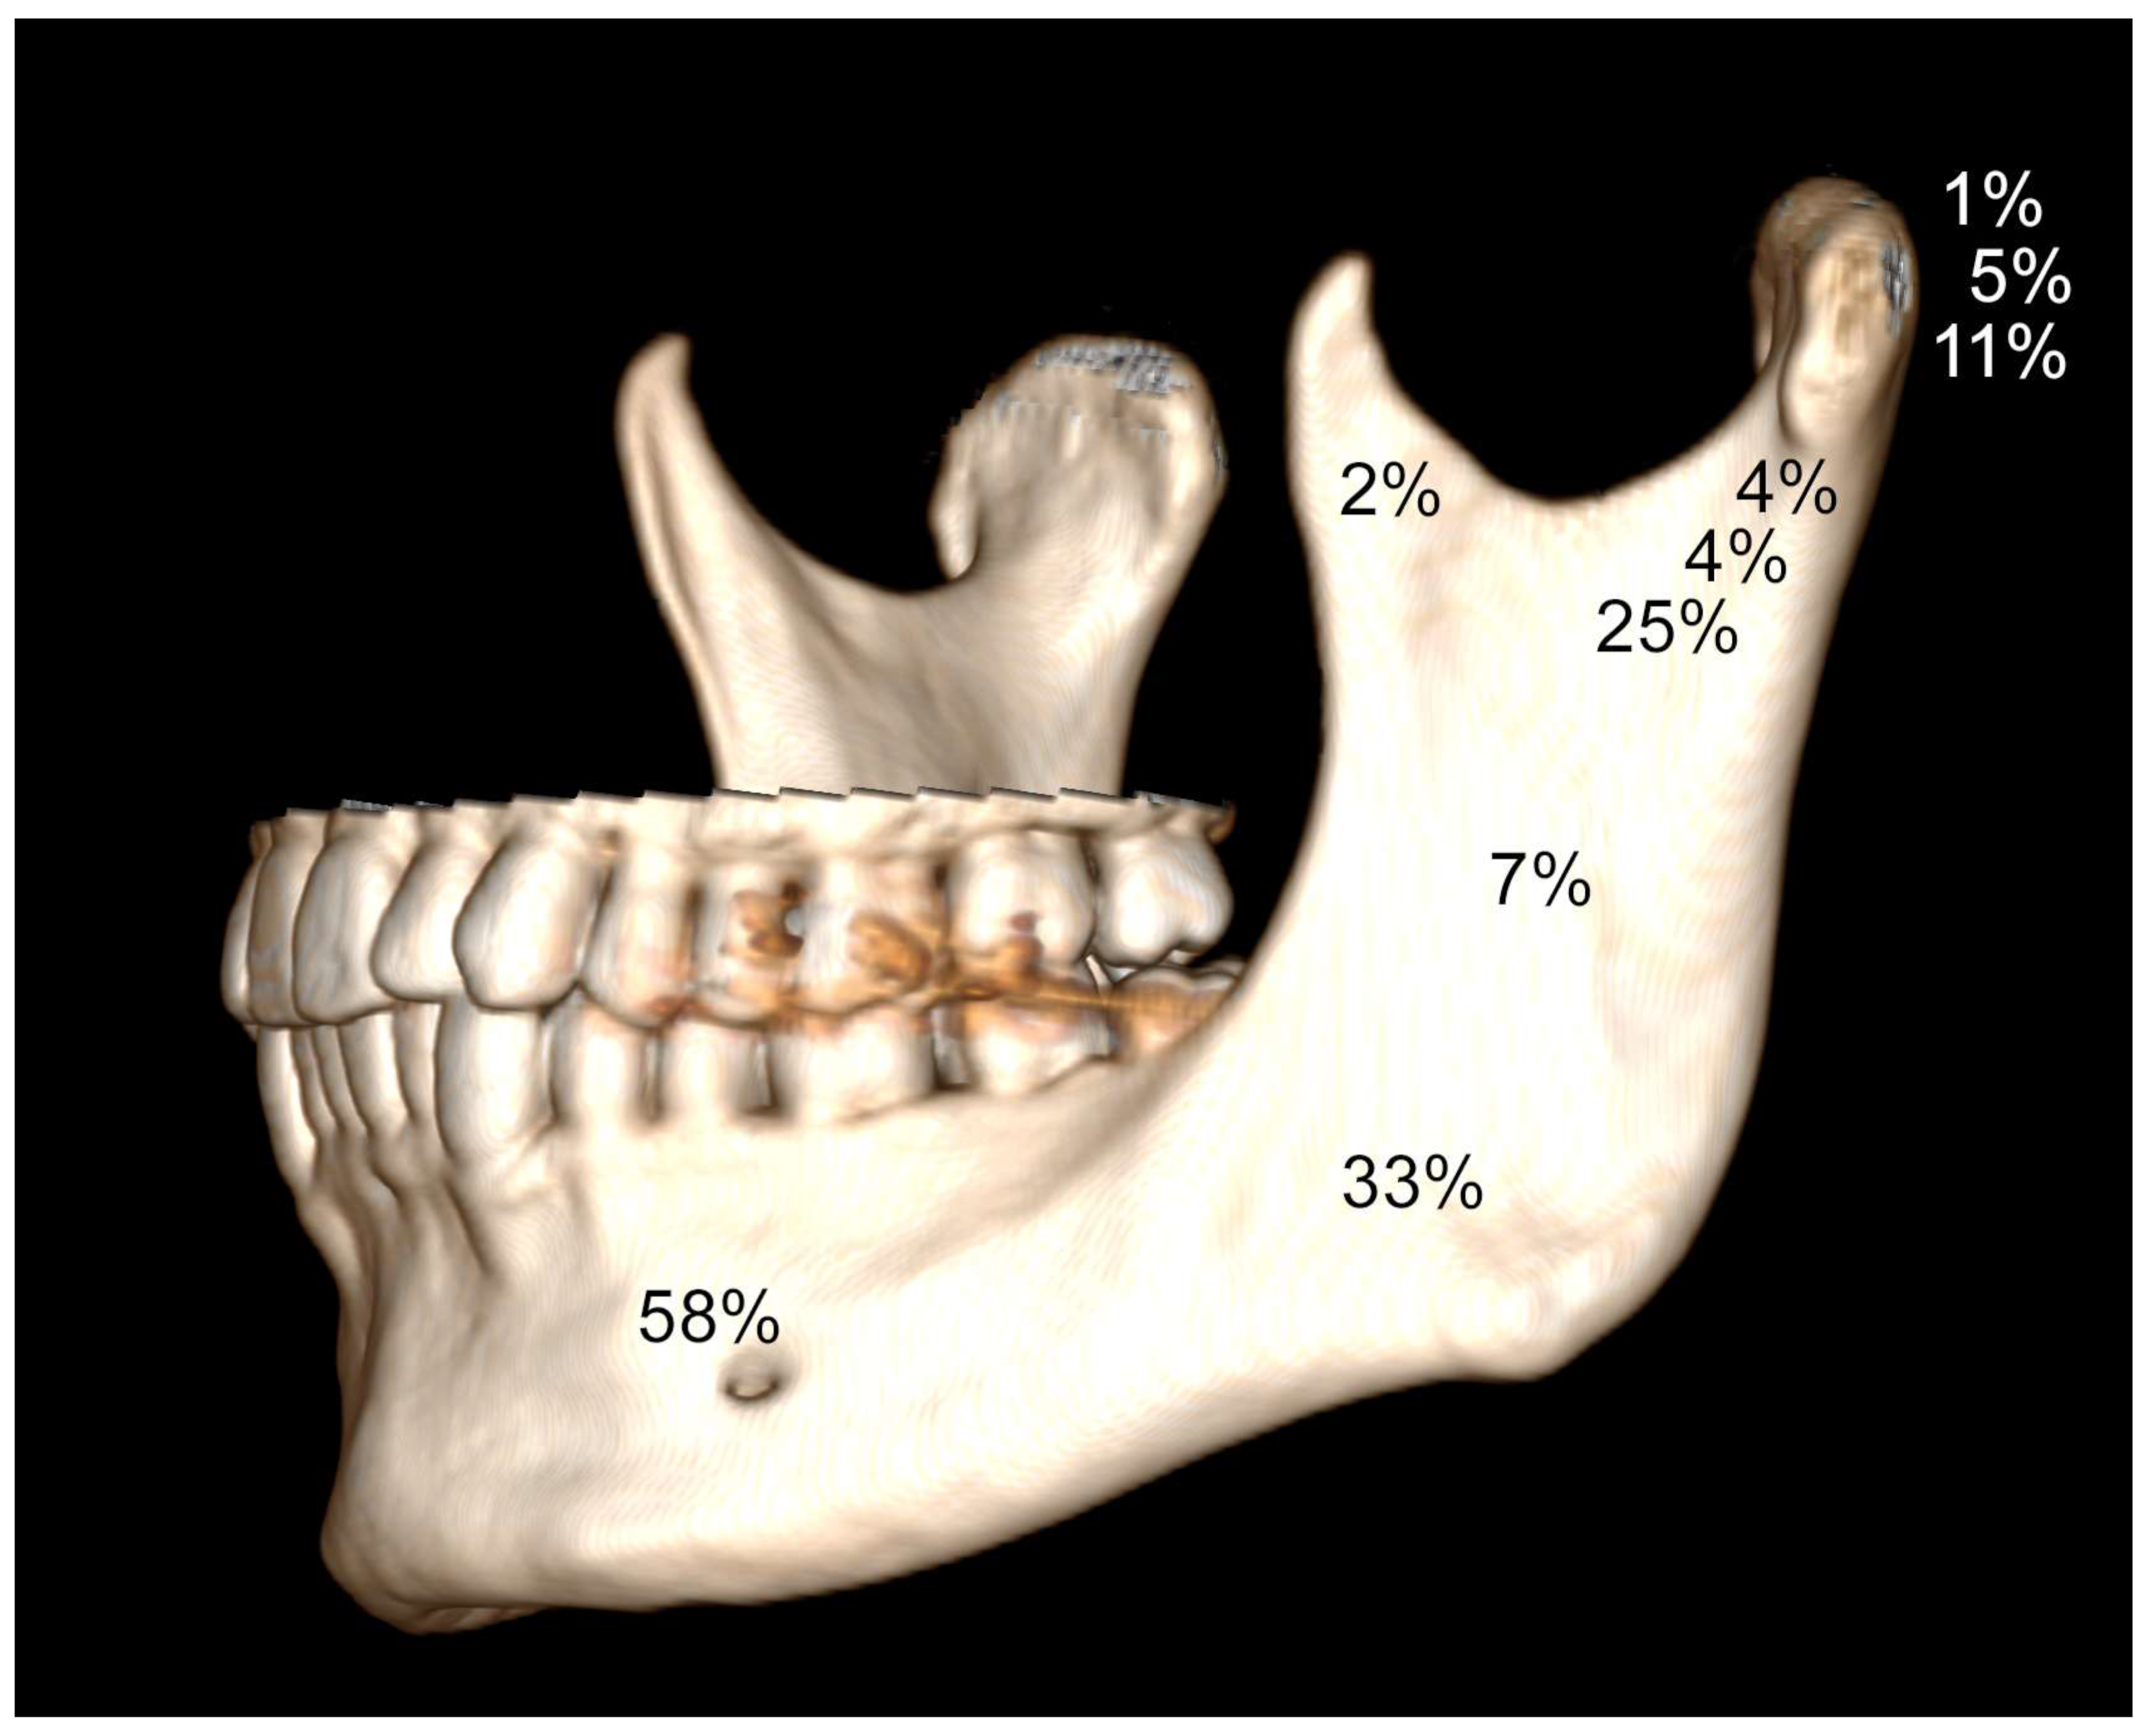 condyloid process and mandibular condyle